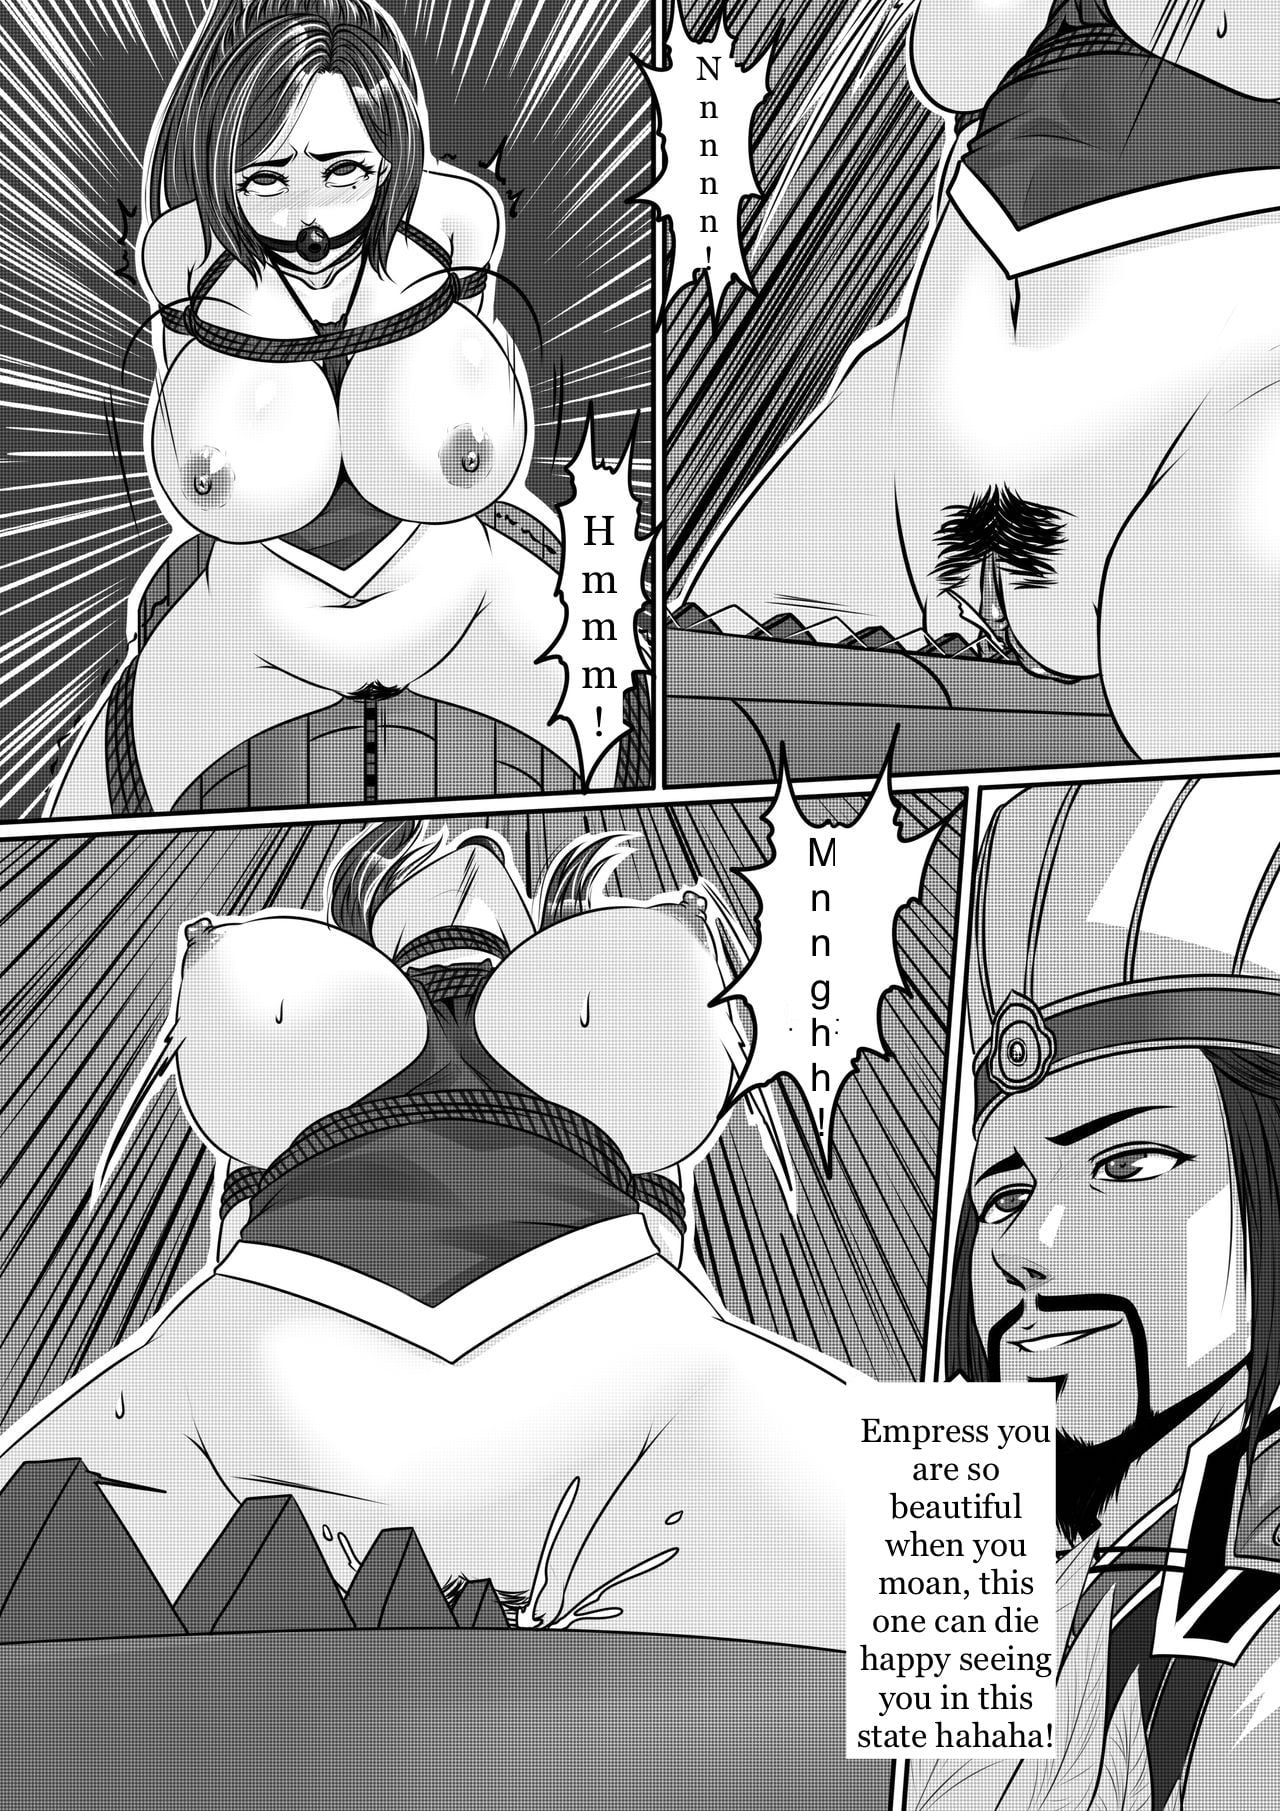 Похождения императора порно комикс фото 116